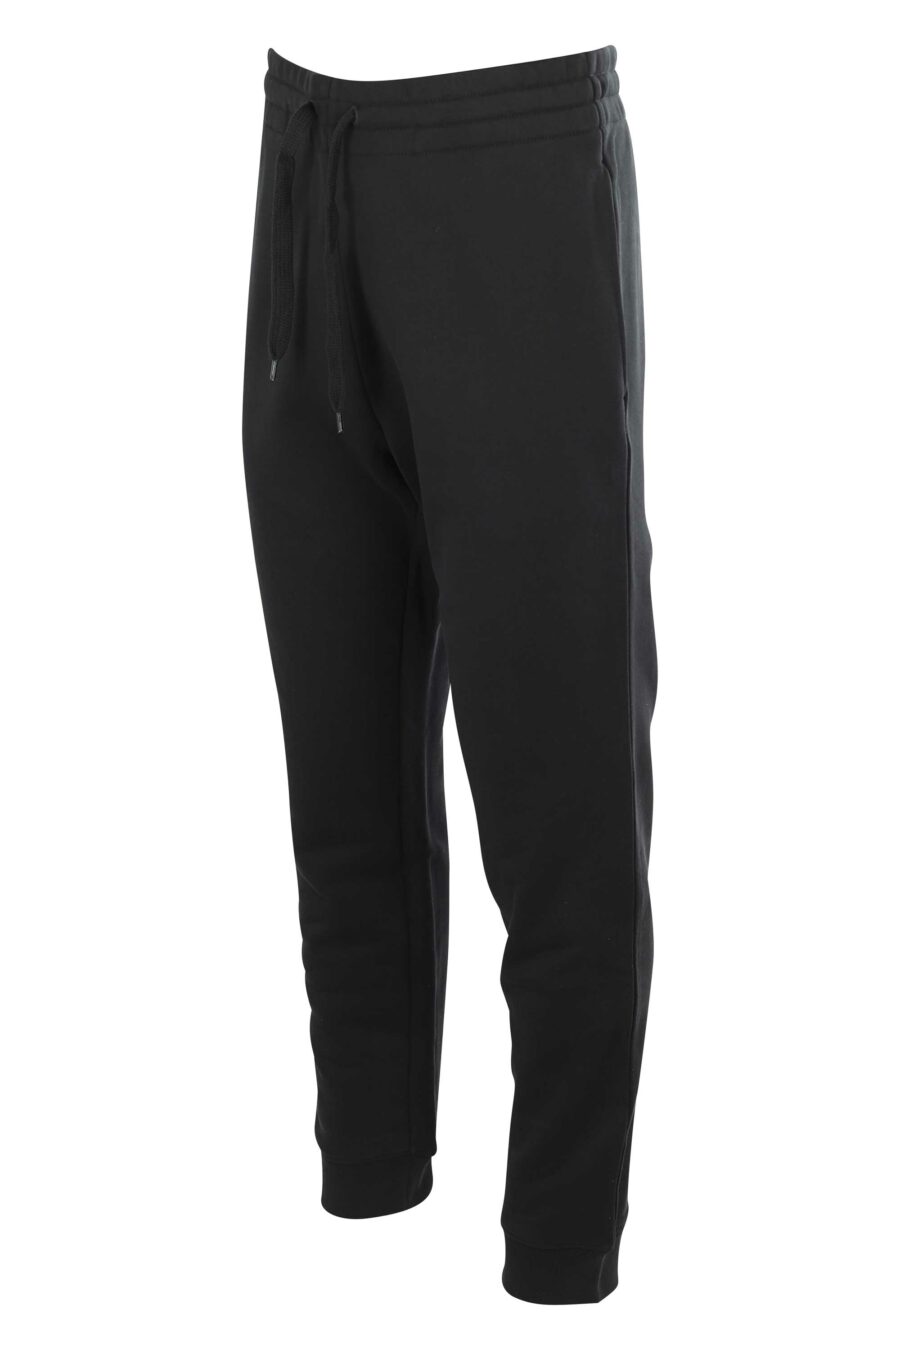 Moschino - Pantalón de chándal negro con logo en bolsillo - BLS